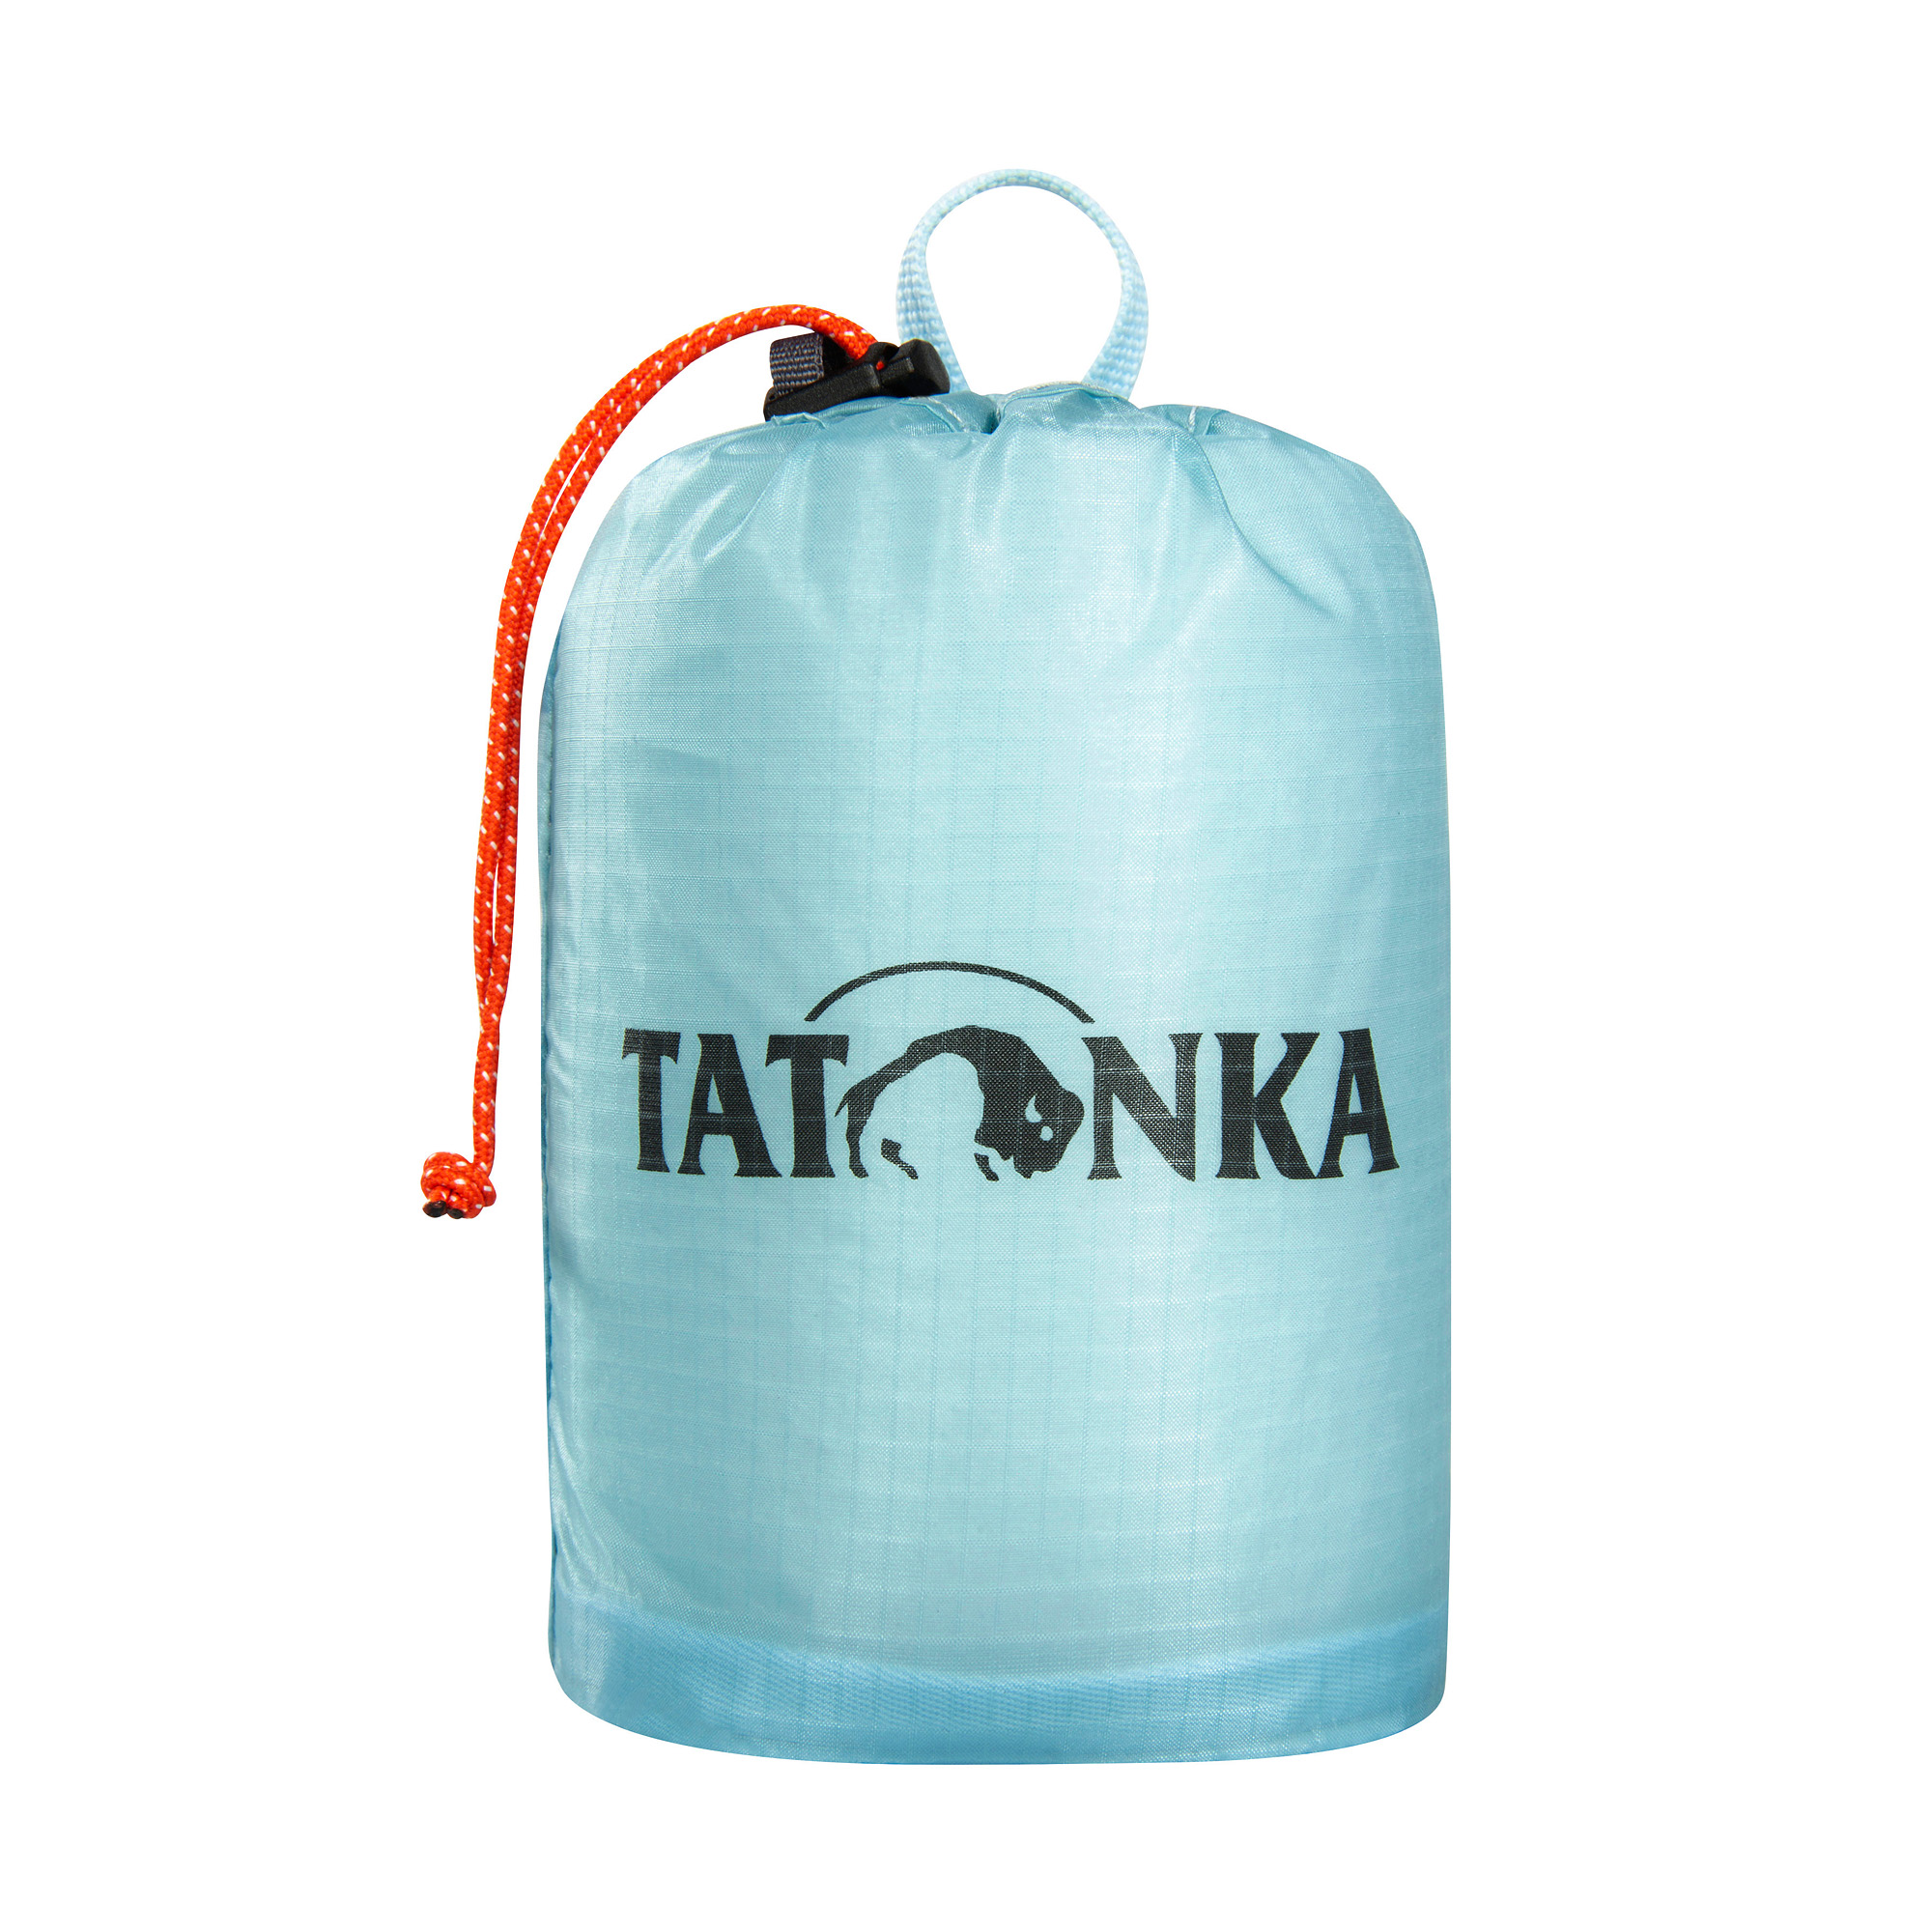 Tatonka SQZY Stuff Bag 0,5l light blue blau Rucksack-Zubehör 4013236336467